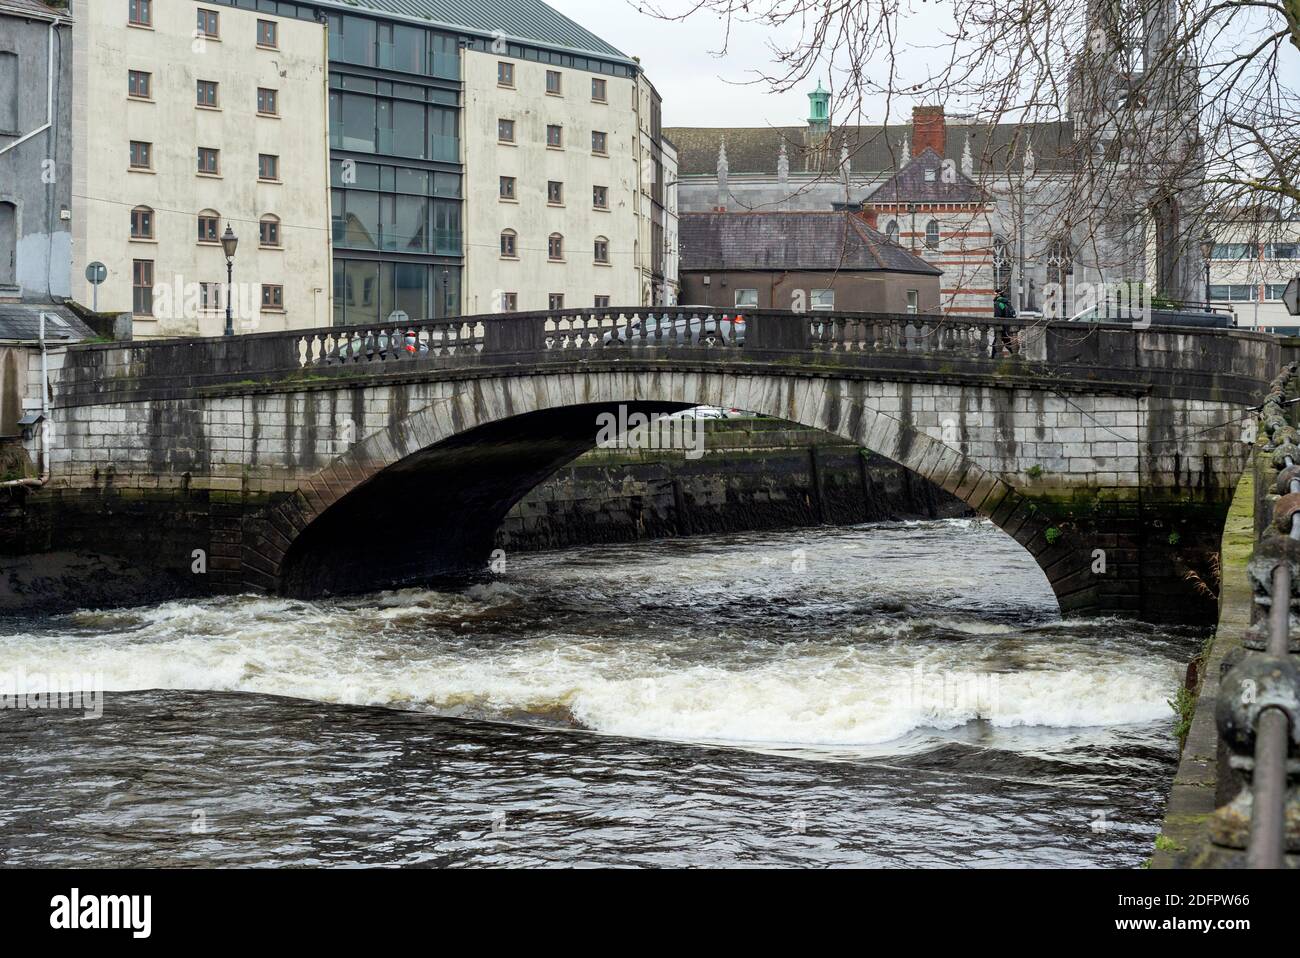 Rare unique vue de la rivière Lee marée basse eaux agitées au Cork Corporation pont du Parlement dans la ville de Cork Irlande causé par lit de rivière inégale. Banque D'Images